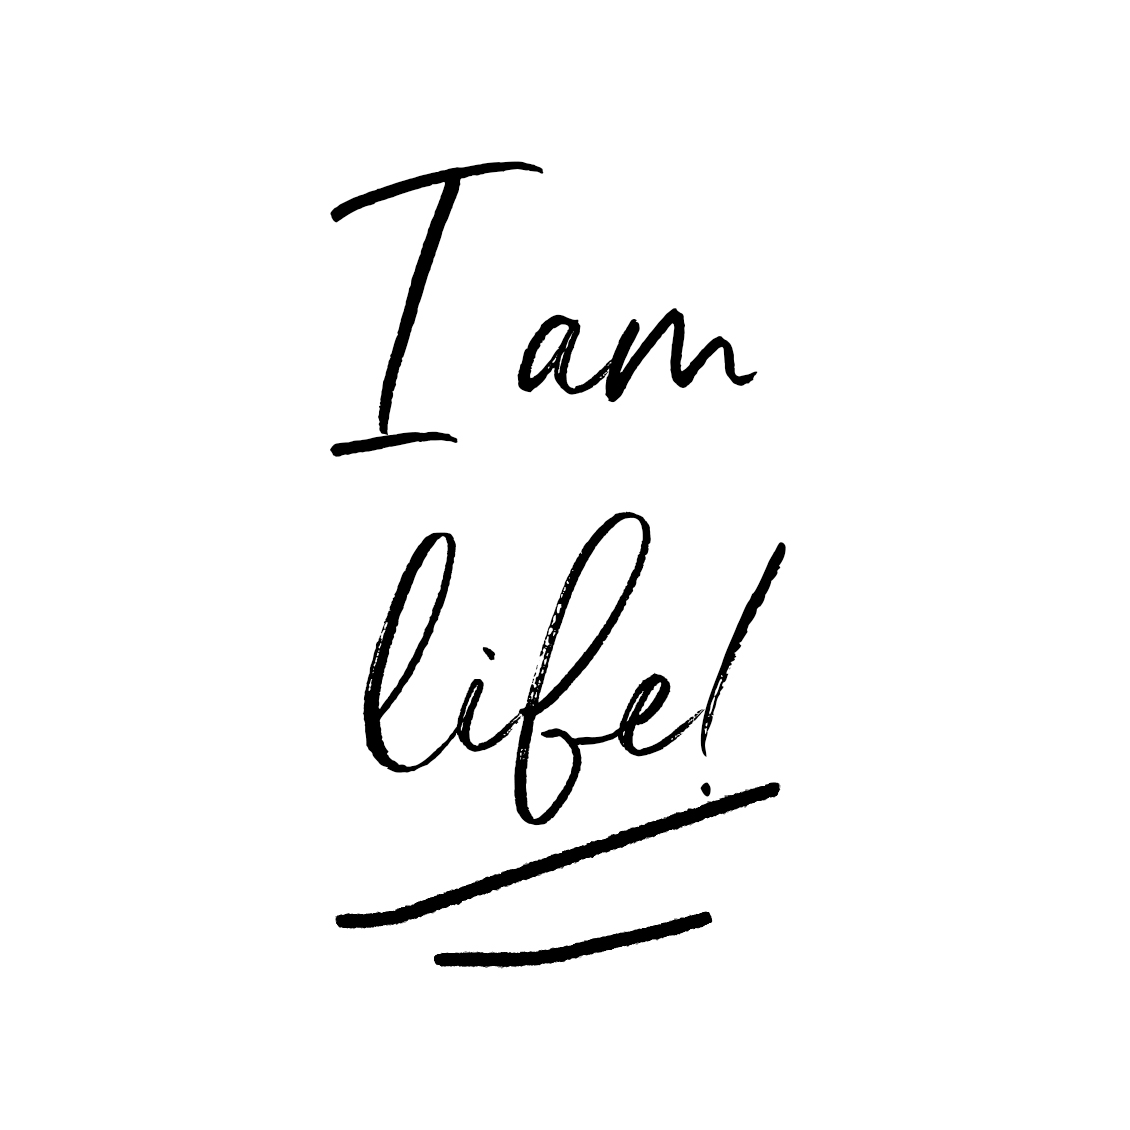 "I am life"